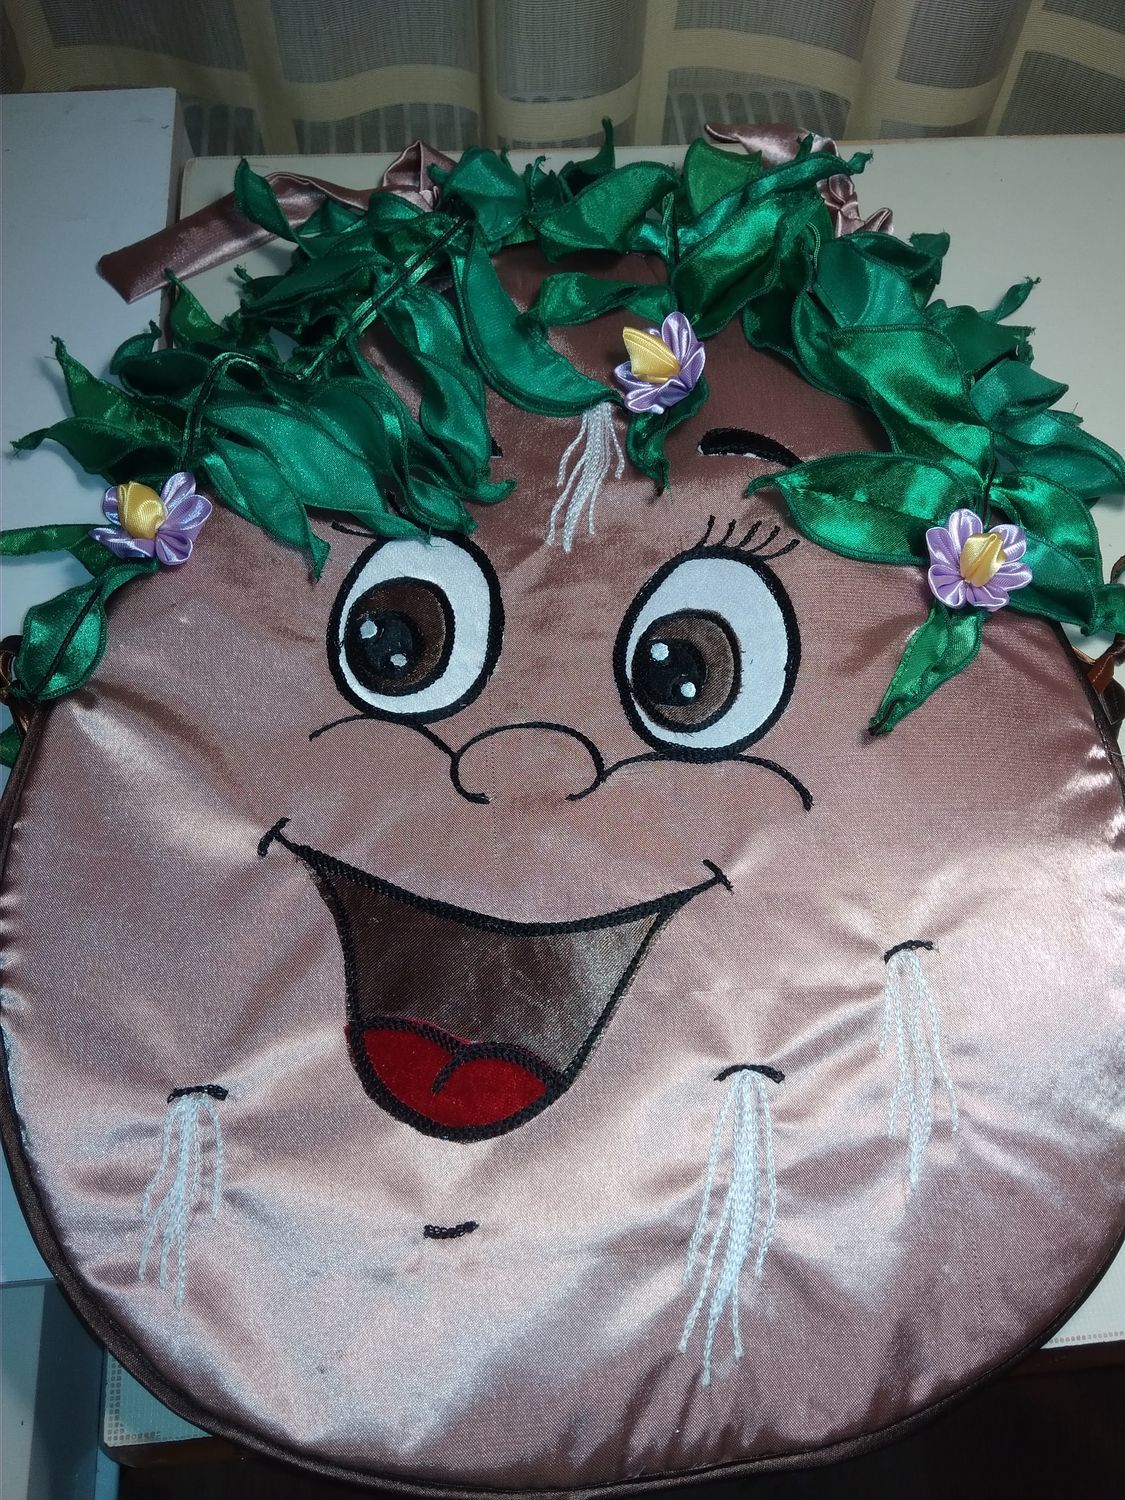 Детский костюм Картошка